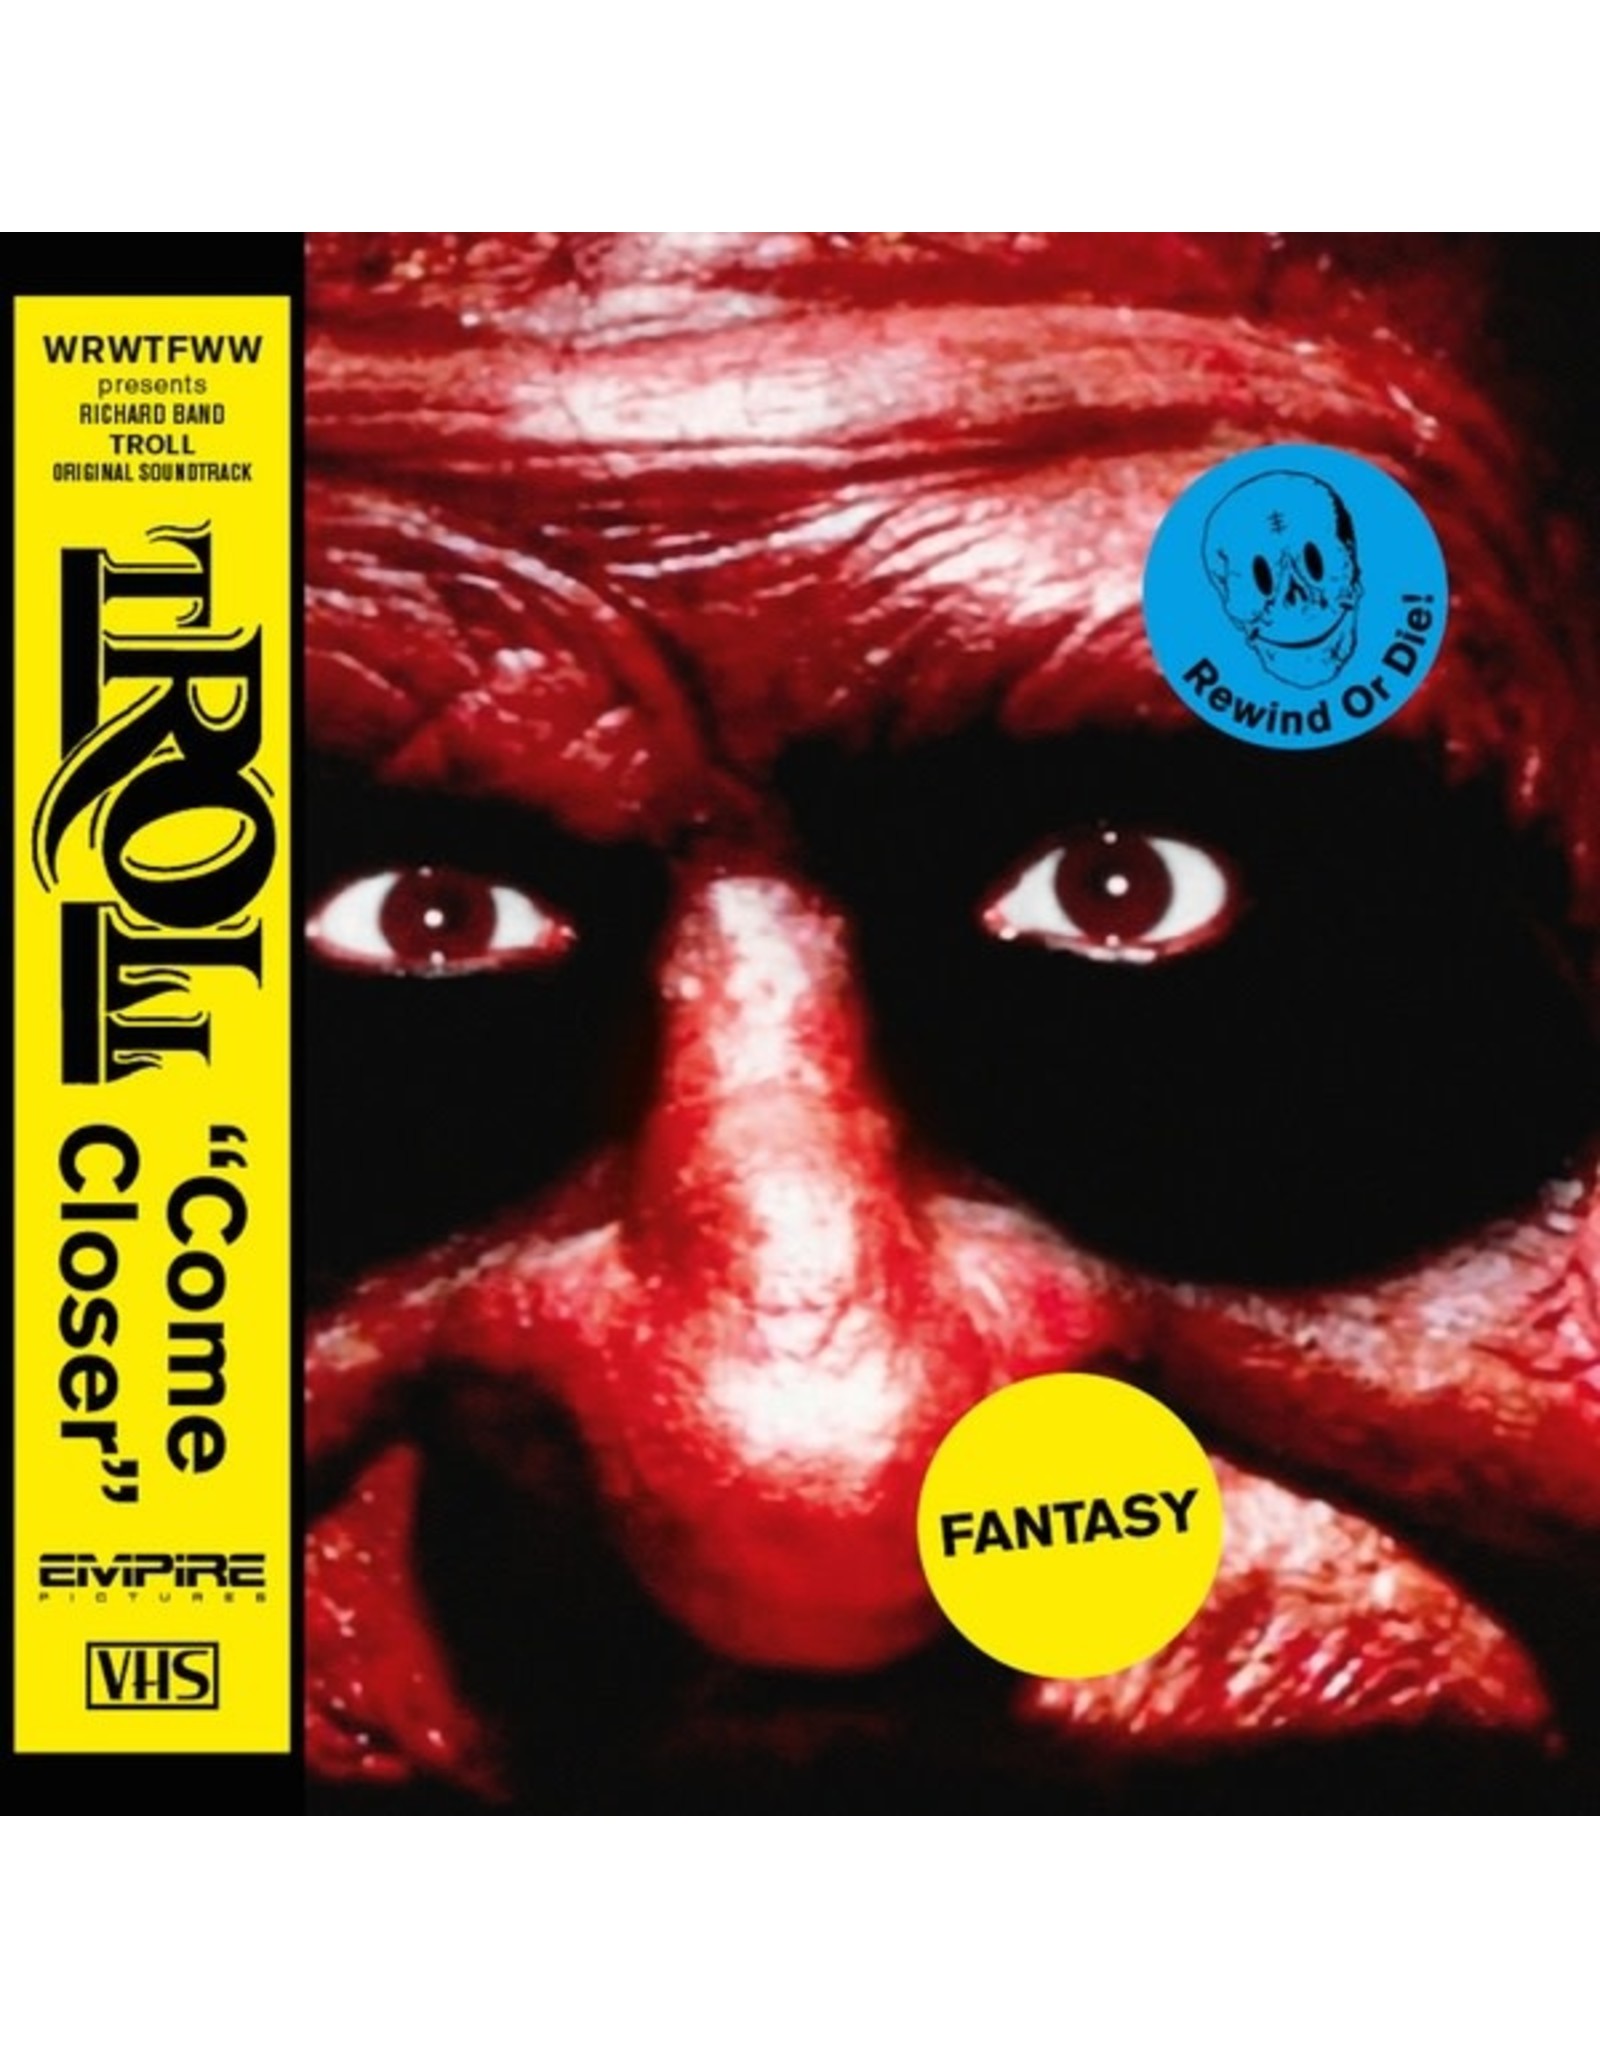 WRWTFWW Band, Richard: Troll OST LP